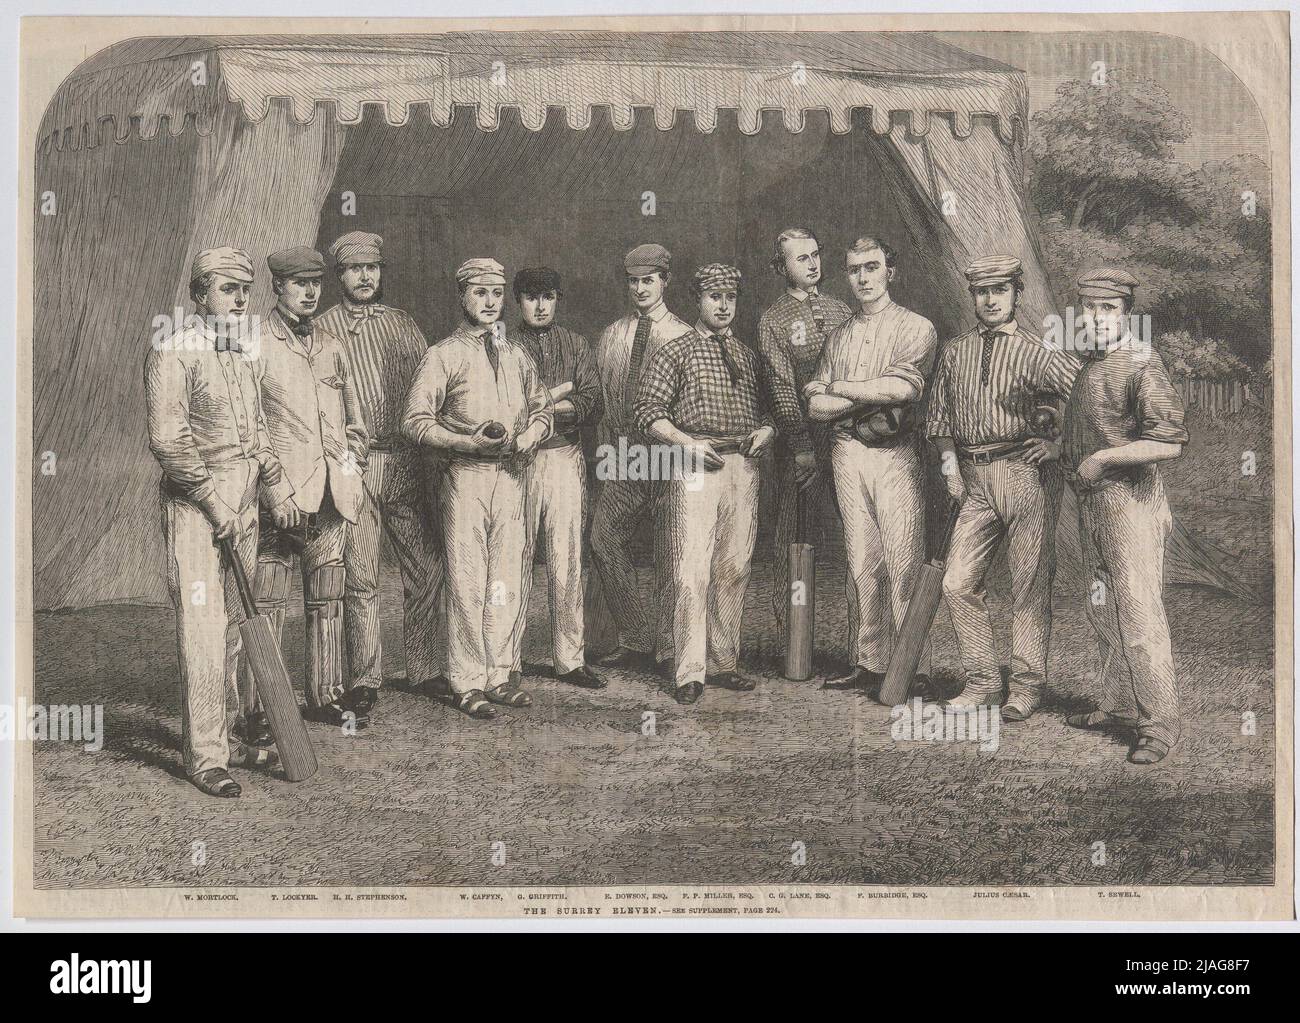 LE SURREY ONZE'. DAS Cricket-Team von Surrey (aus 'The Illustrated London News'). Inconnu Banque D'Images